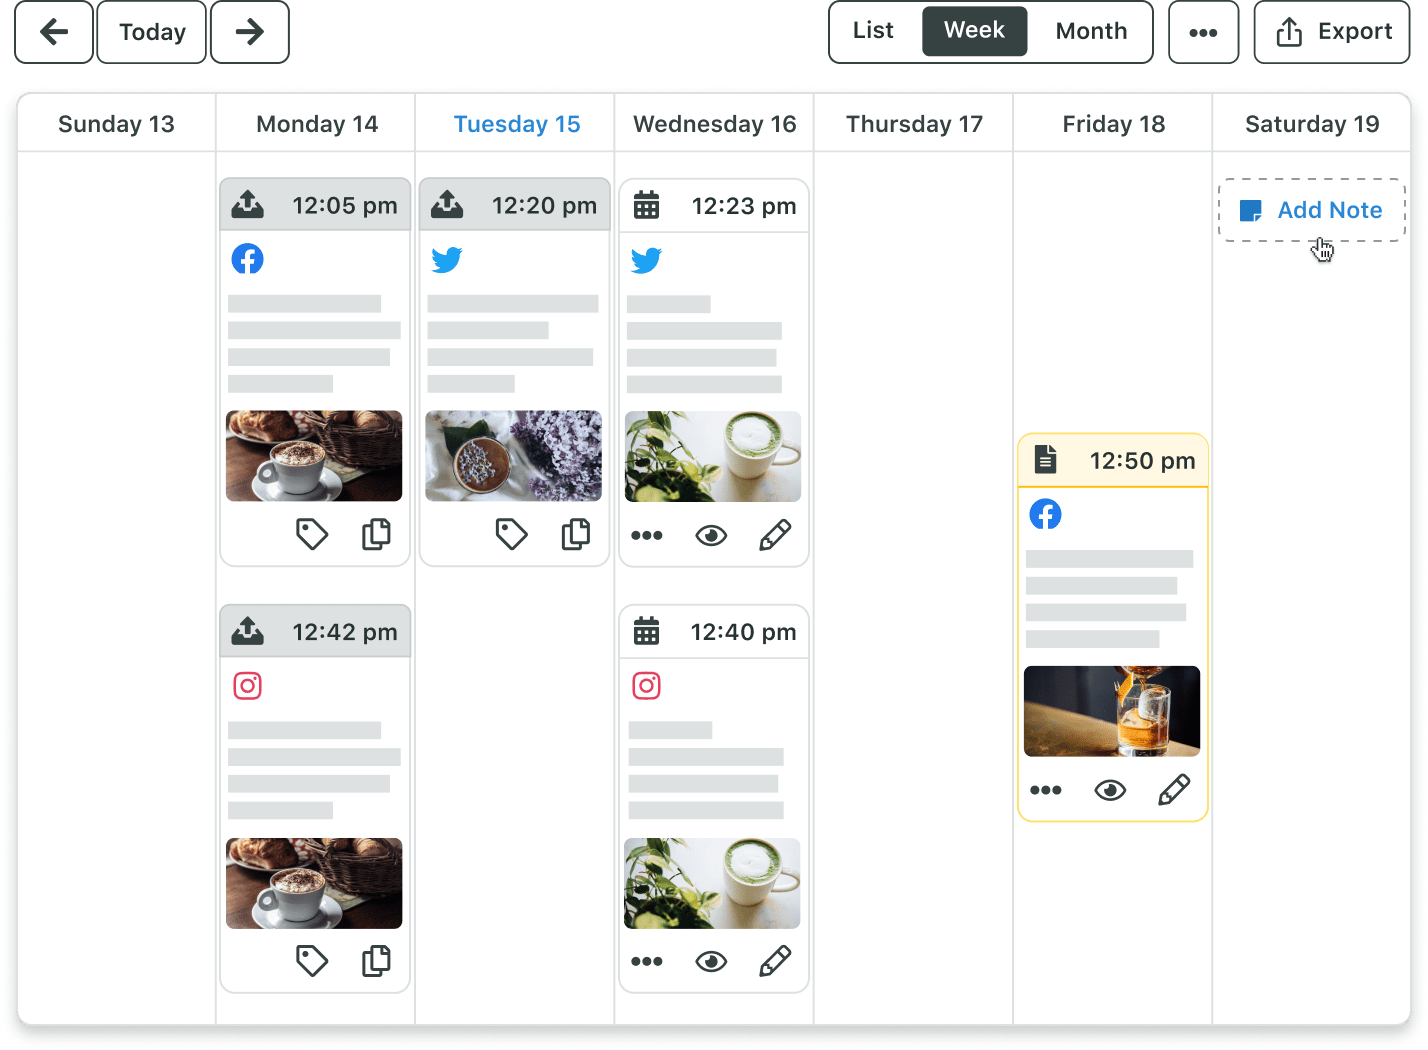 Il calendario di pubblicazione di Sprout mostra una panoramica di tutti i post programmati per la settimana, nonché l'opzione per visualizzare, etichettare e modificare i contenuti.